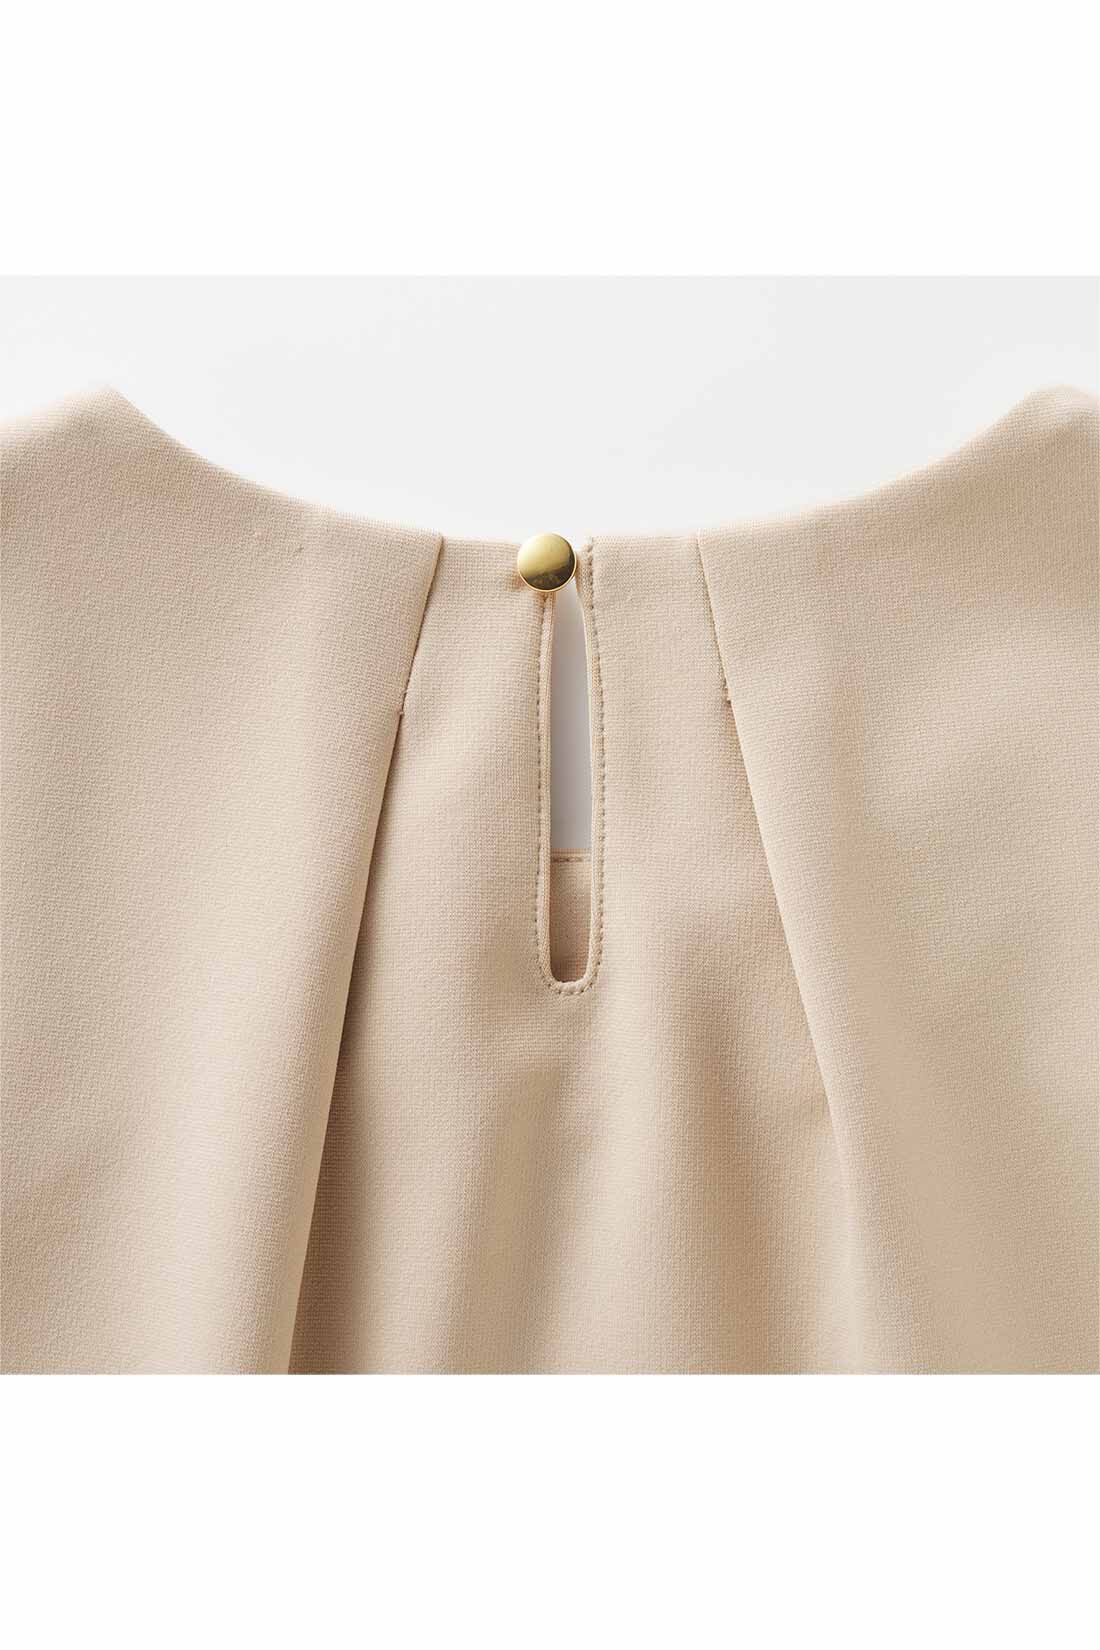 Real Stock|IEDIT[イディット]好印象スタイルが完成する 着まわし自在なスカートセットアップ〈ベージュ〉|涙開きの小さなゴールドボタンが華やぐアクセント。タック遣いで後ろ姿までふんわりきれい。